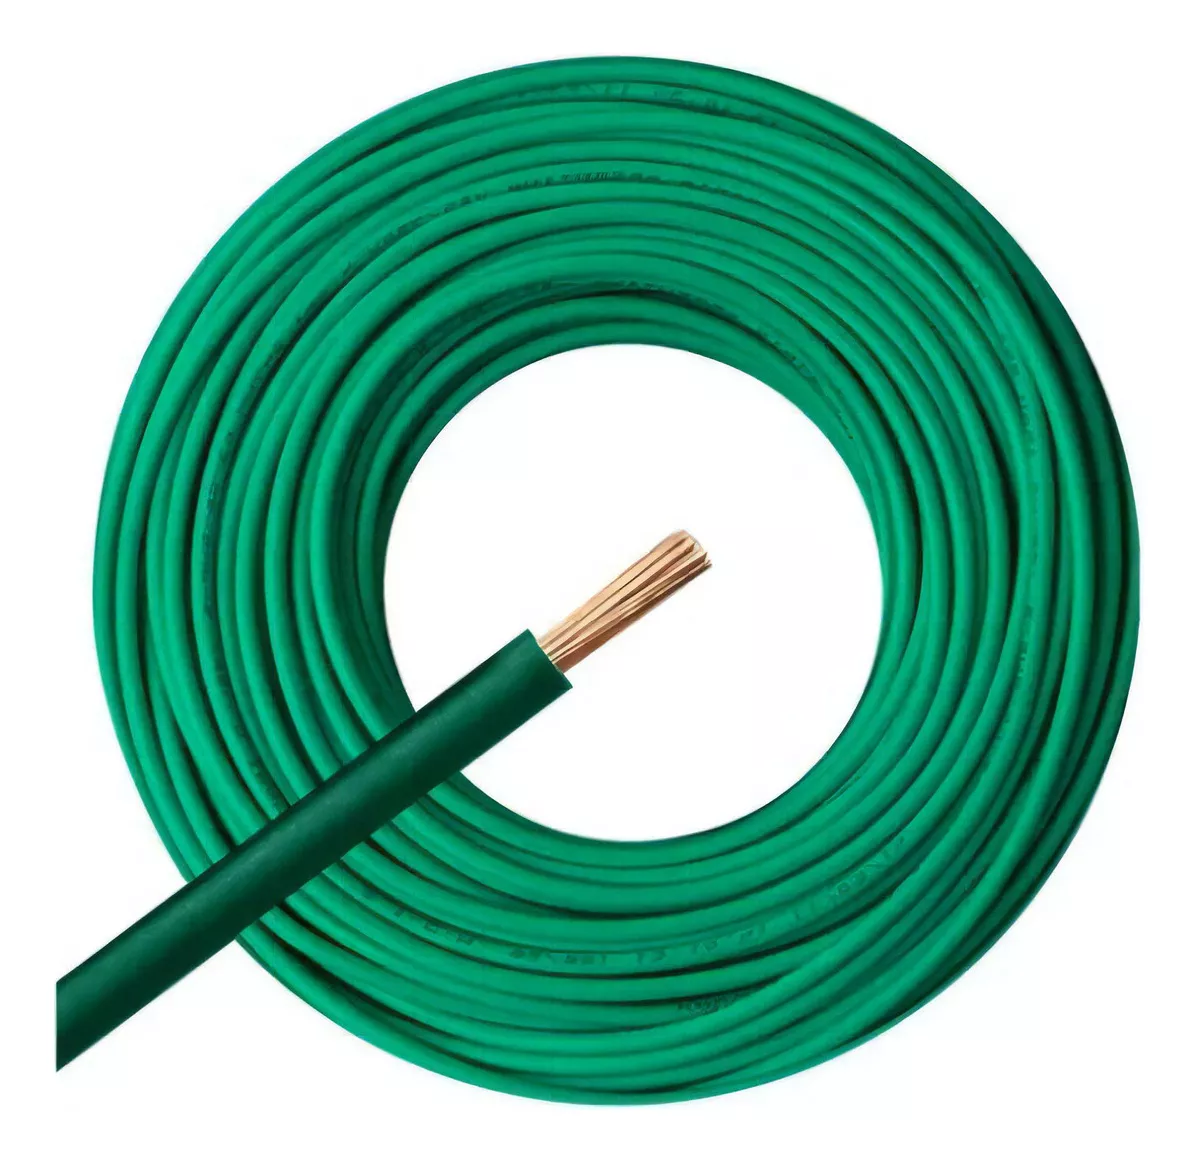 Segunda imagen para búsqueda de cable 2.5 mm normalizado electricidad cables unipolares